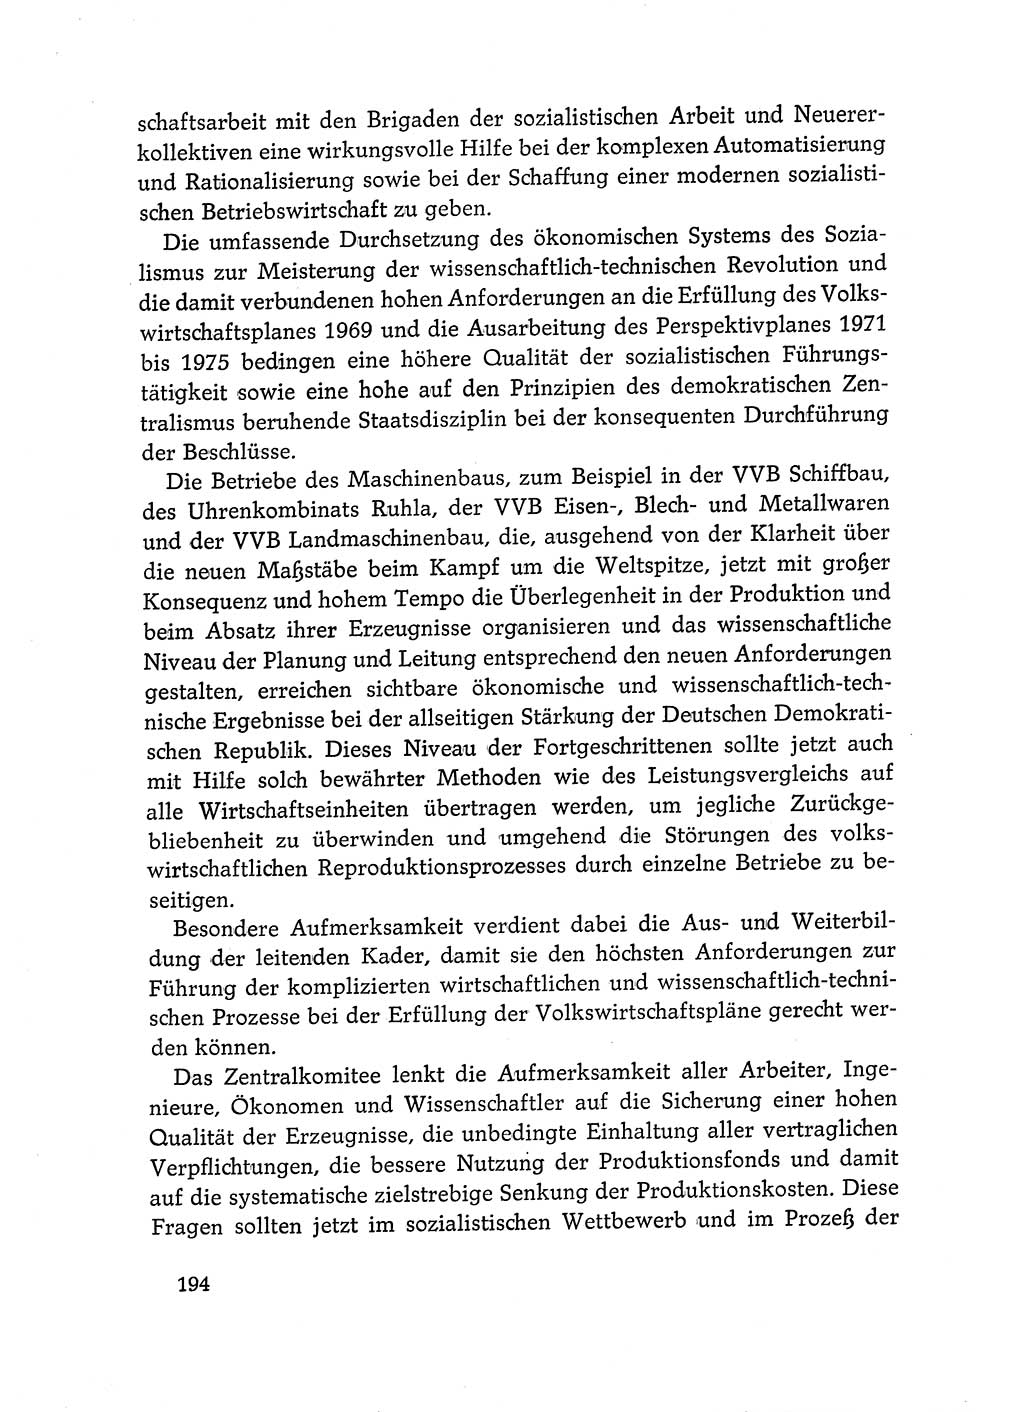 Dokumente der Sozialistischen Einheitspartei Deutschlands (SED) [Deutsche Demokratische Republik (DDR)] 1968-1969, Seite 194 (Dok. SED DDR 1968-1969, S. 194)